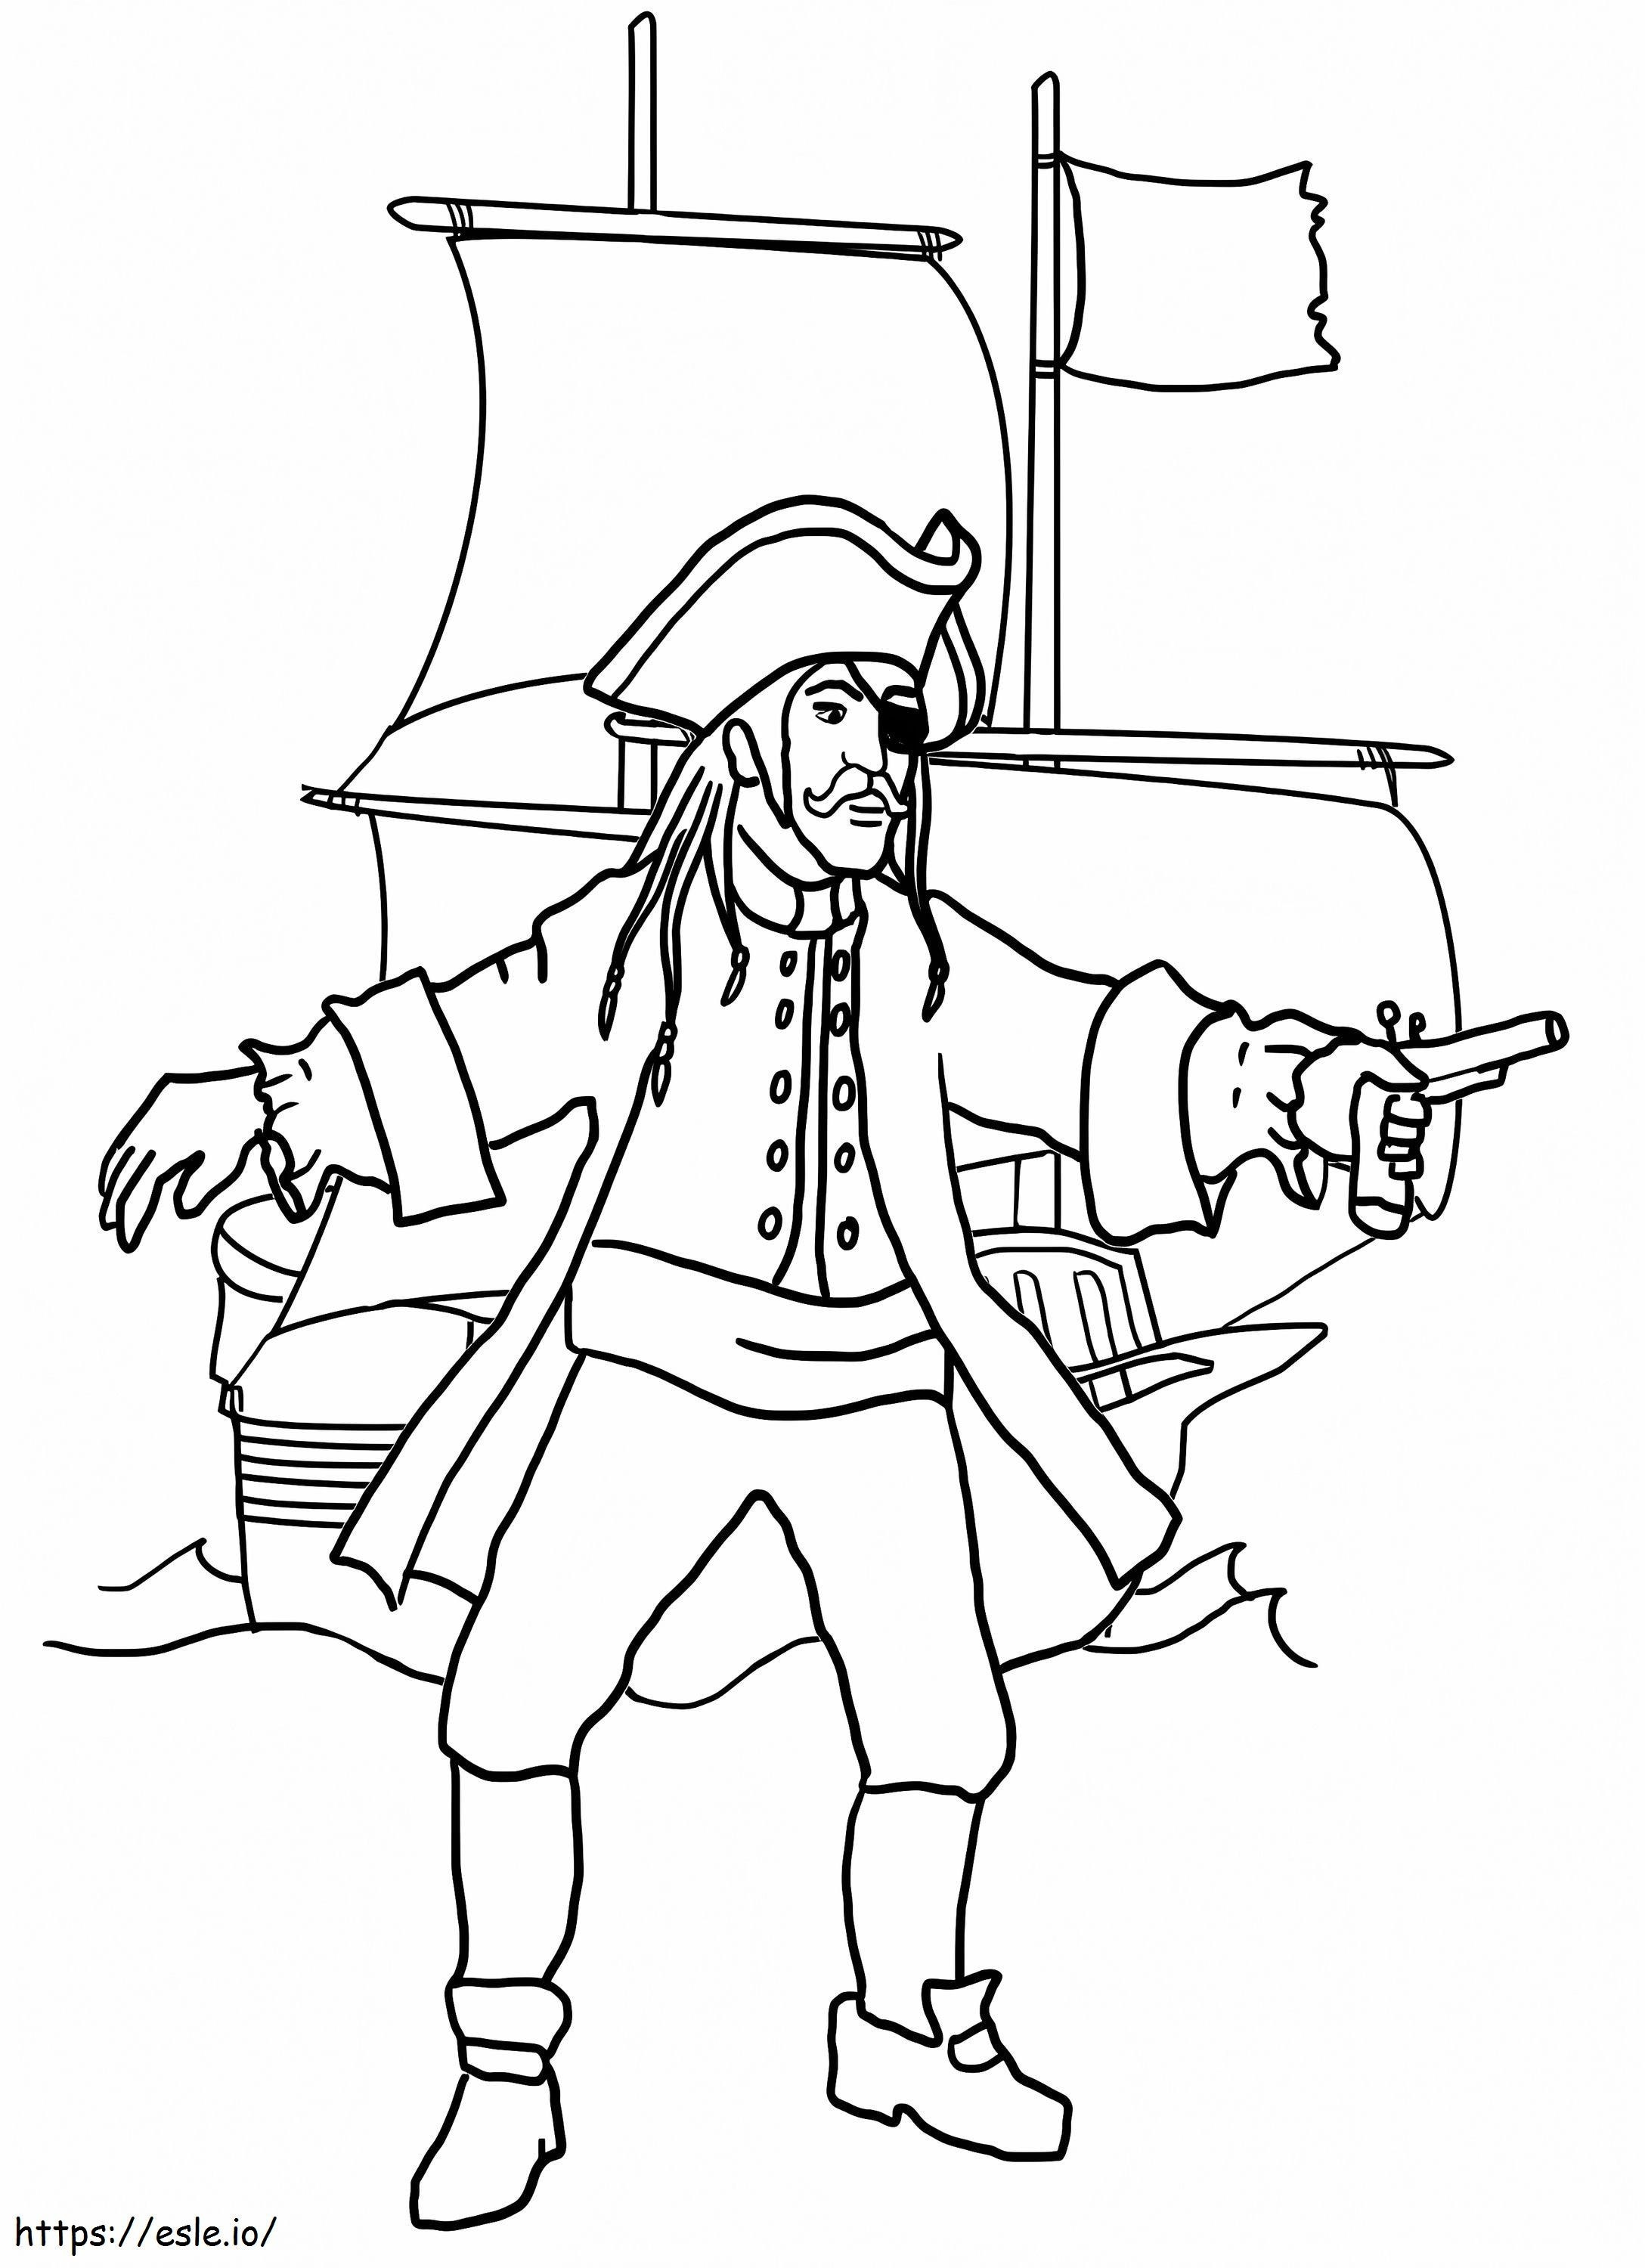 Página para colorir de pirata e navio pirata para colorir